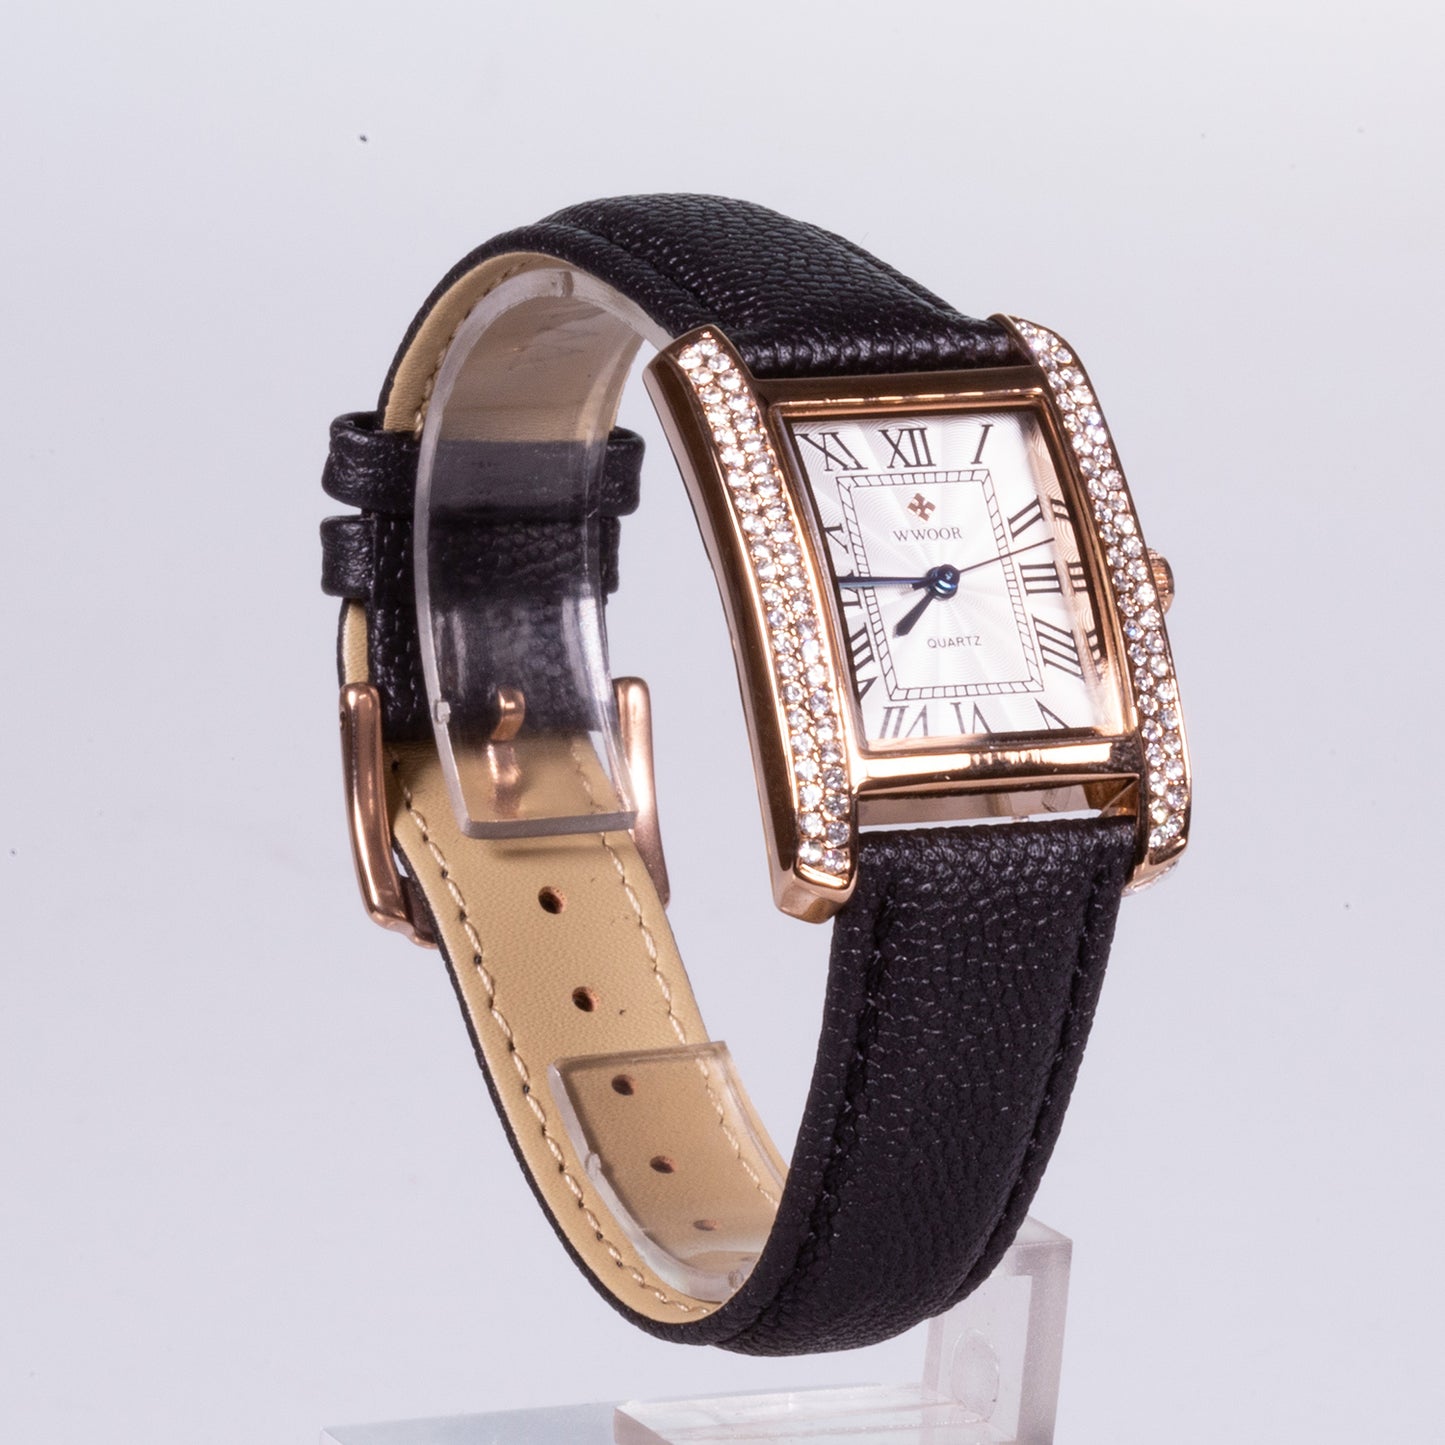 Reloj de acero inoxidable, correa negra de cuero genuino y con caja de color dorado. Reloj de circonitas blancas